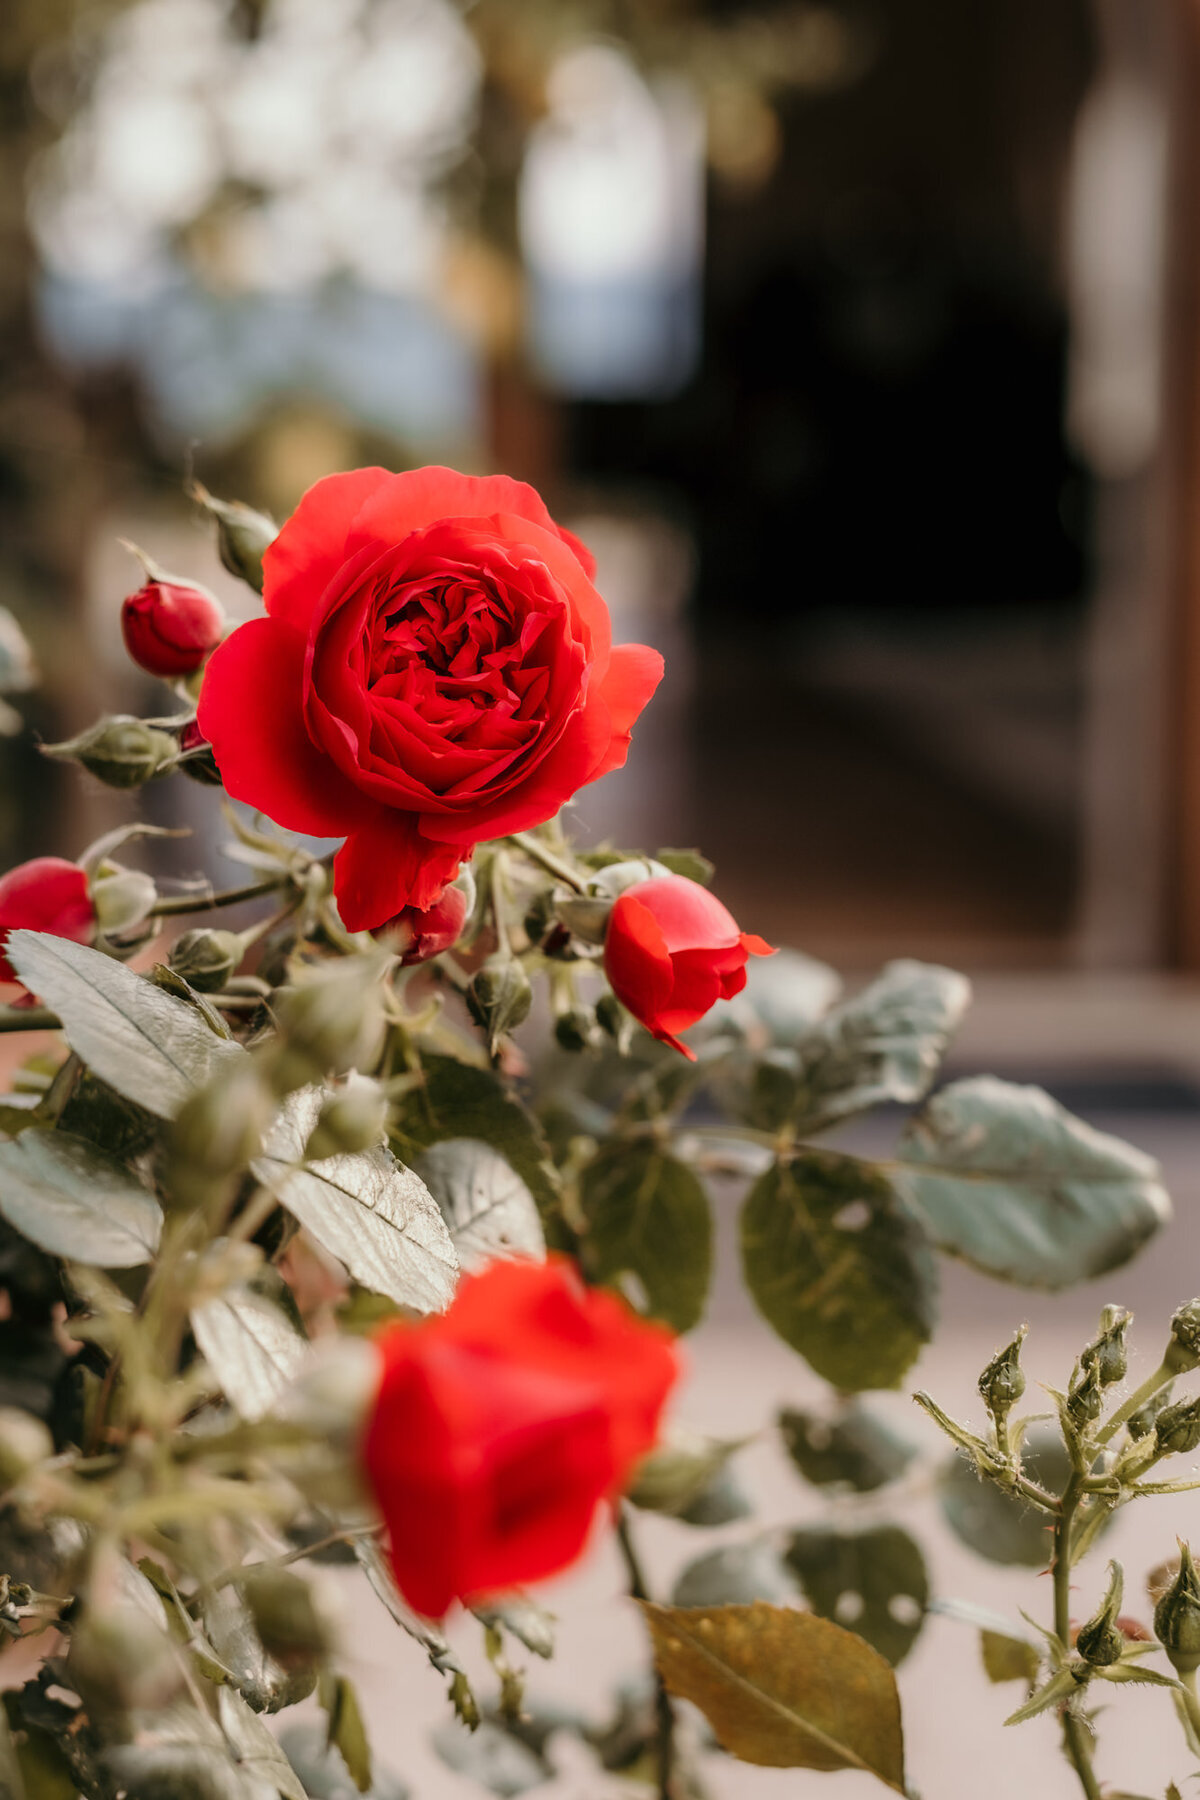 Ein Rosenstock in der Nahaufnahme zeigt das strahlende Rot der Blumen.